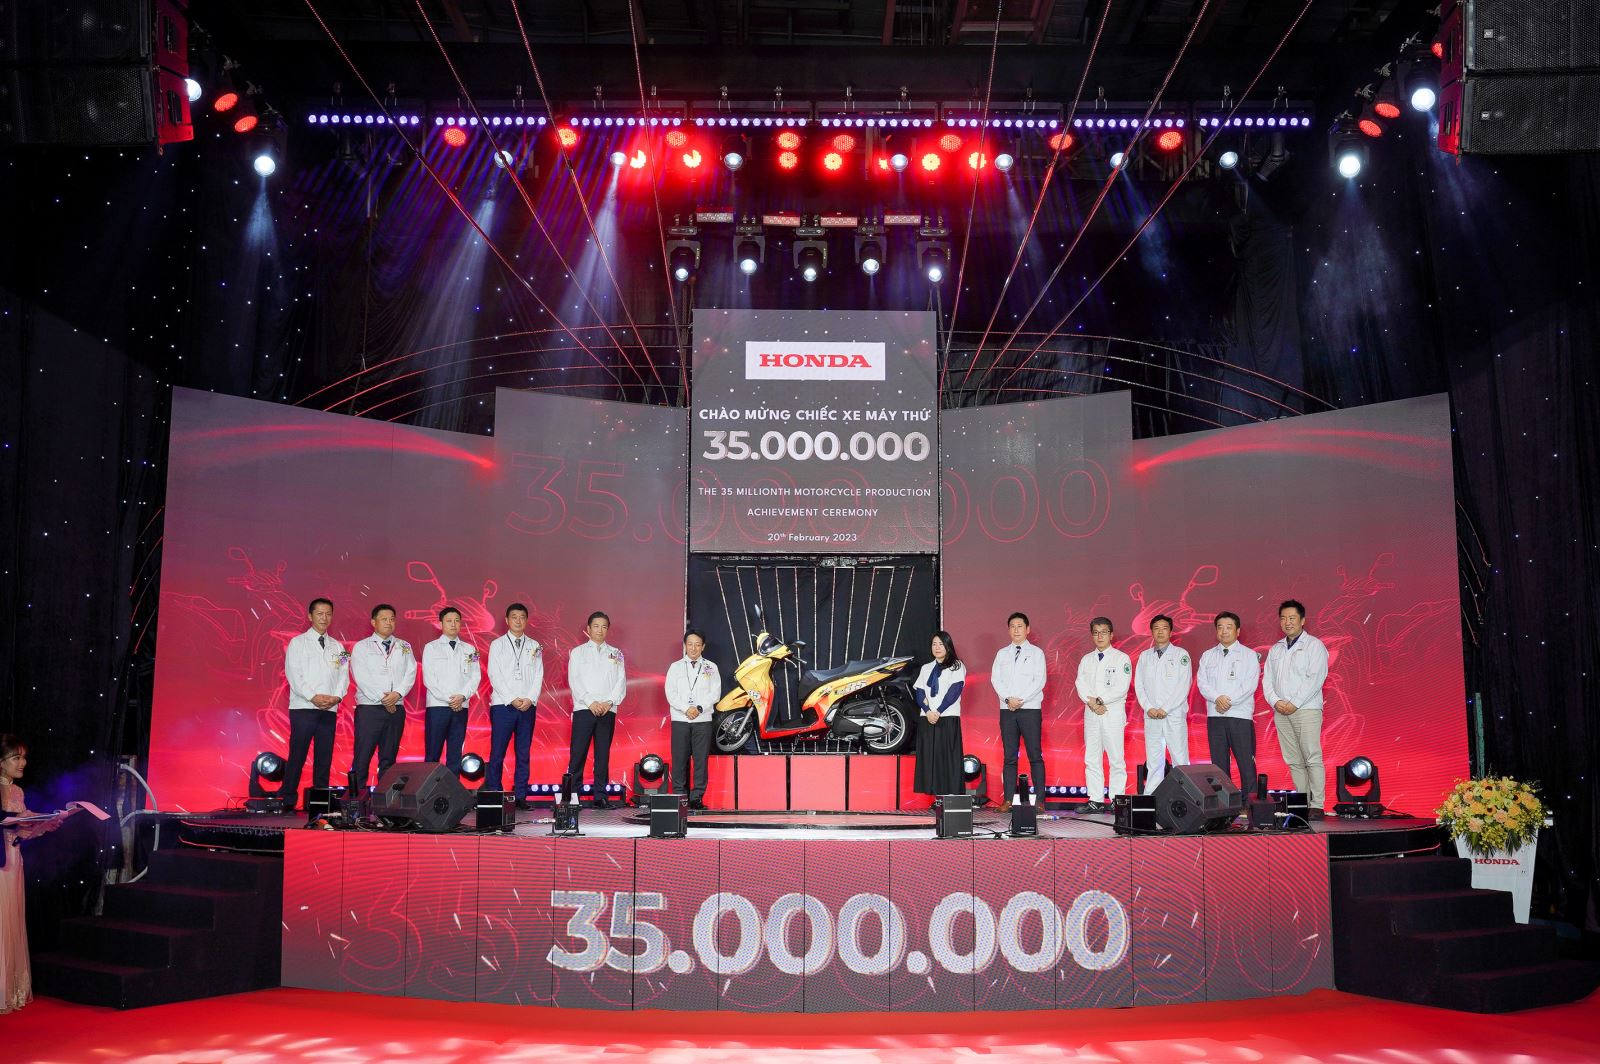 Honda Việt Nam chào đón chiếc xe máy thứ 35 triệu.